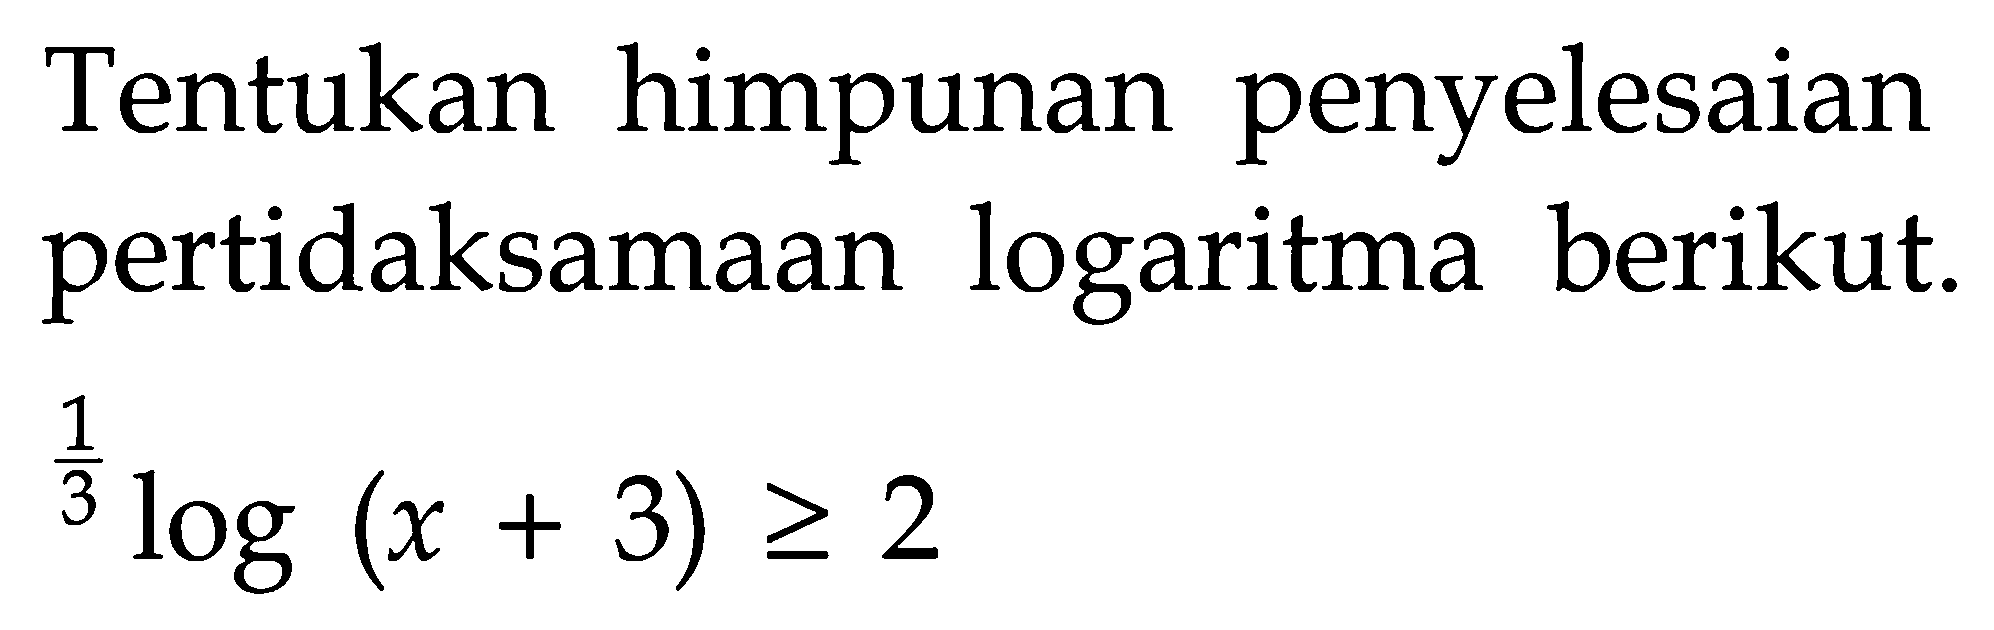 Tentukan himpunan penyelesaian pertidaksamaan logaritma berikut. (1/3)log(x+3)>=2